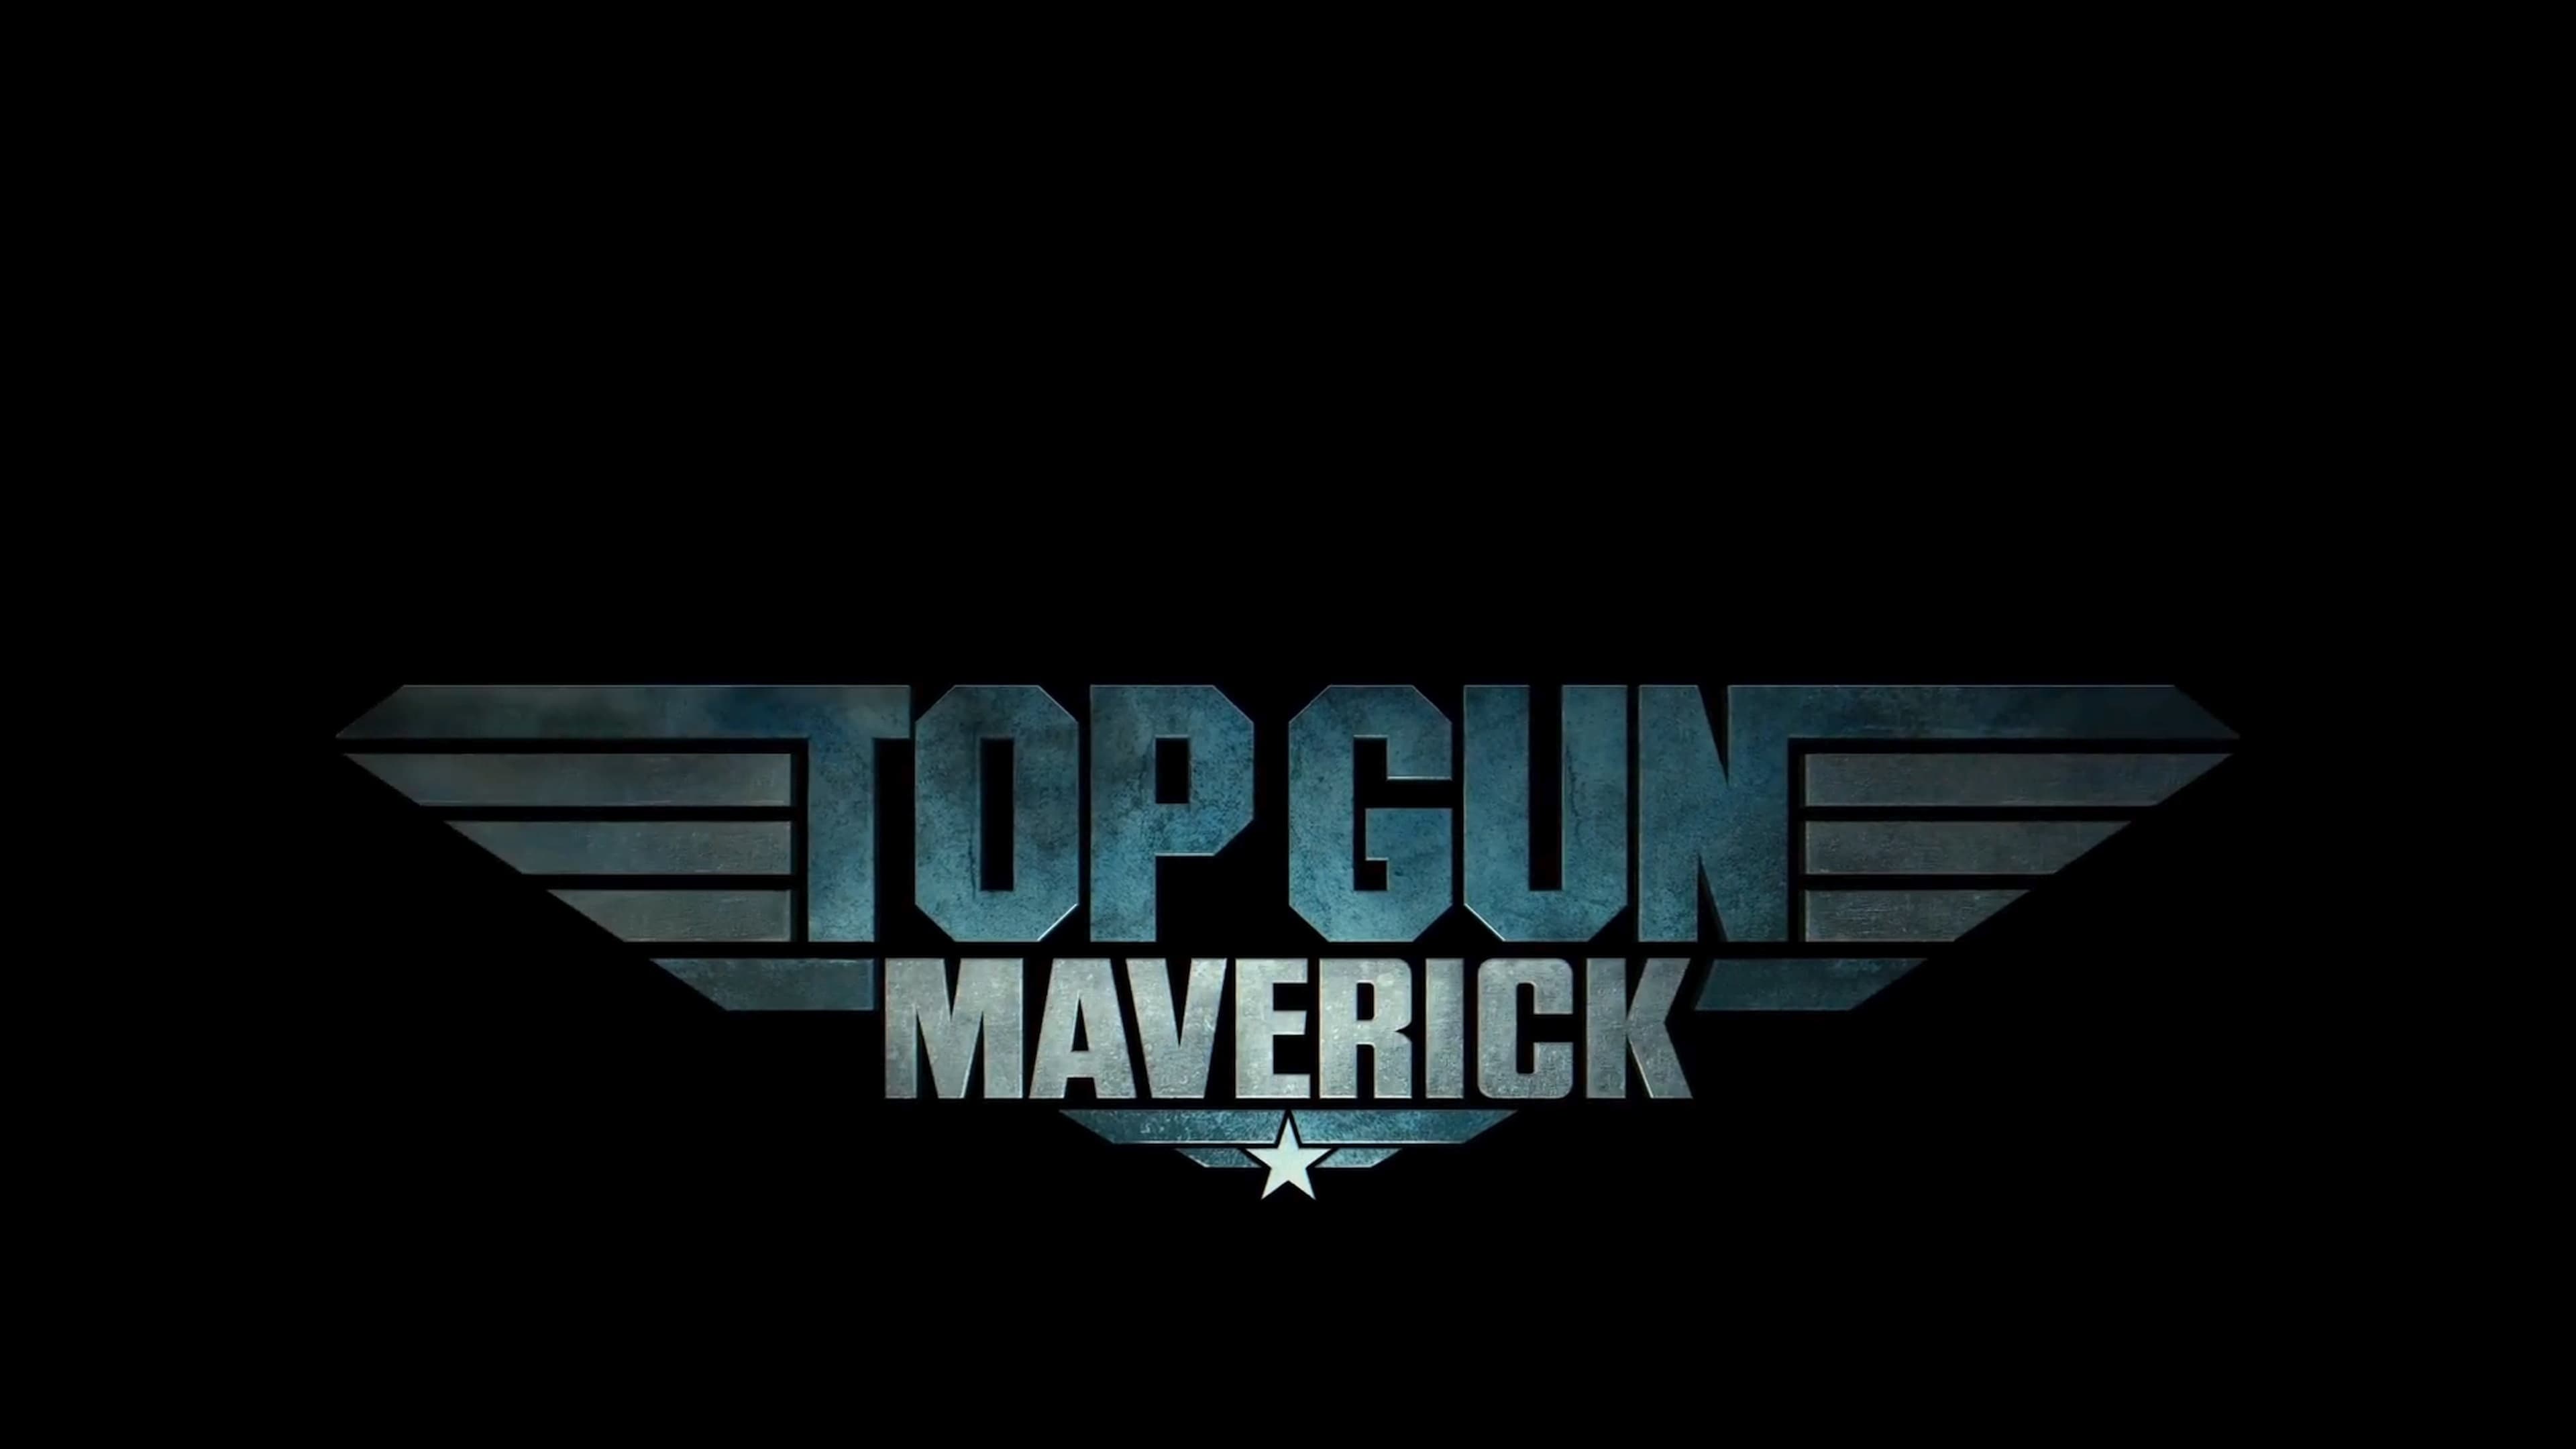 Backgrounds and walpapers Top Gun: Maverick